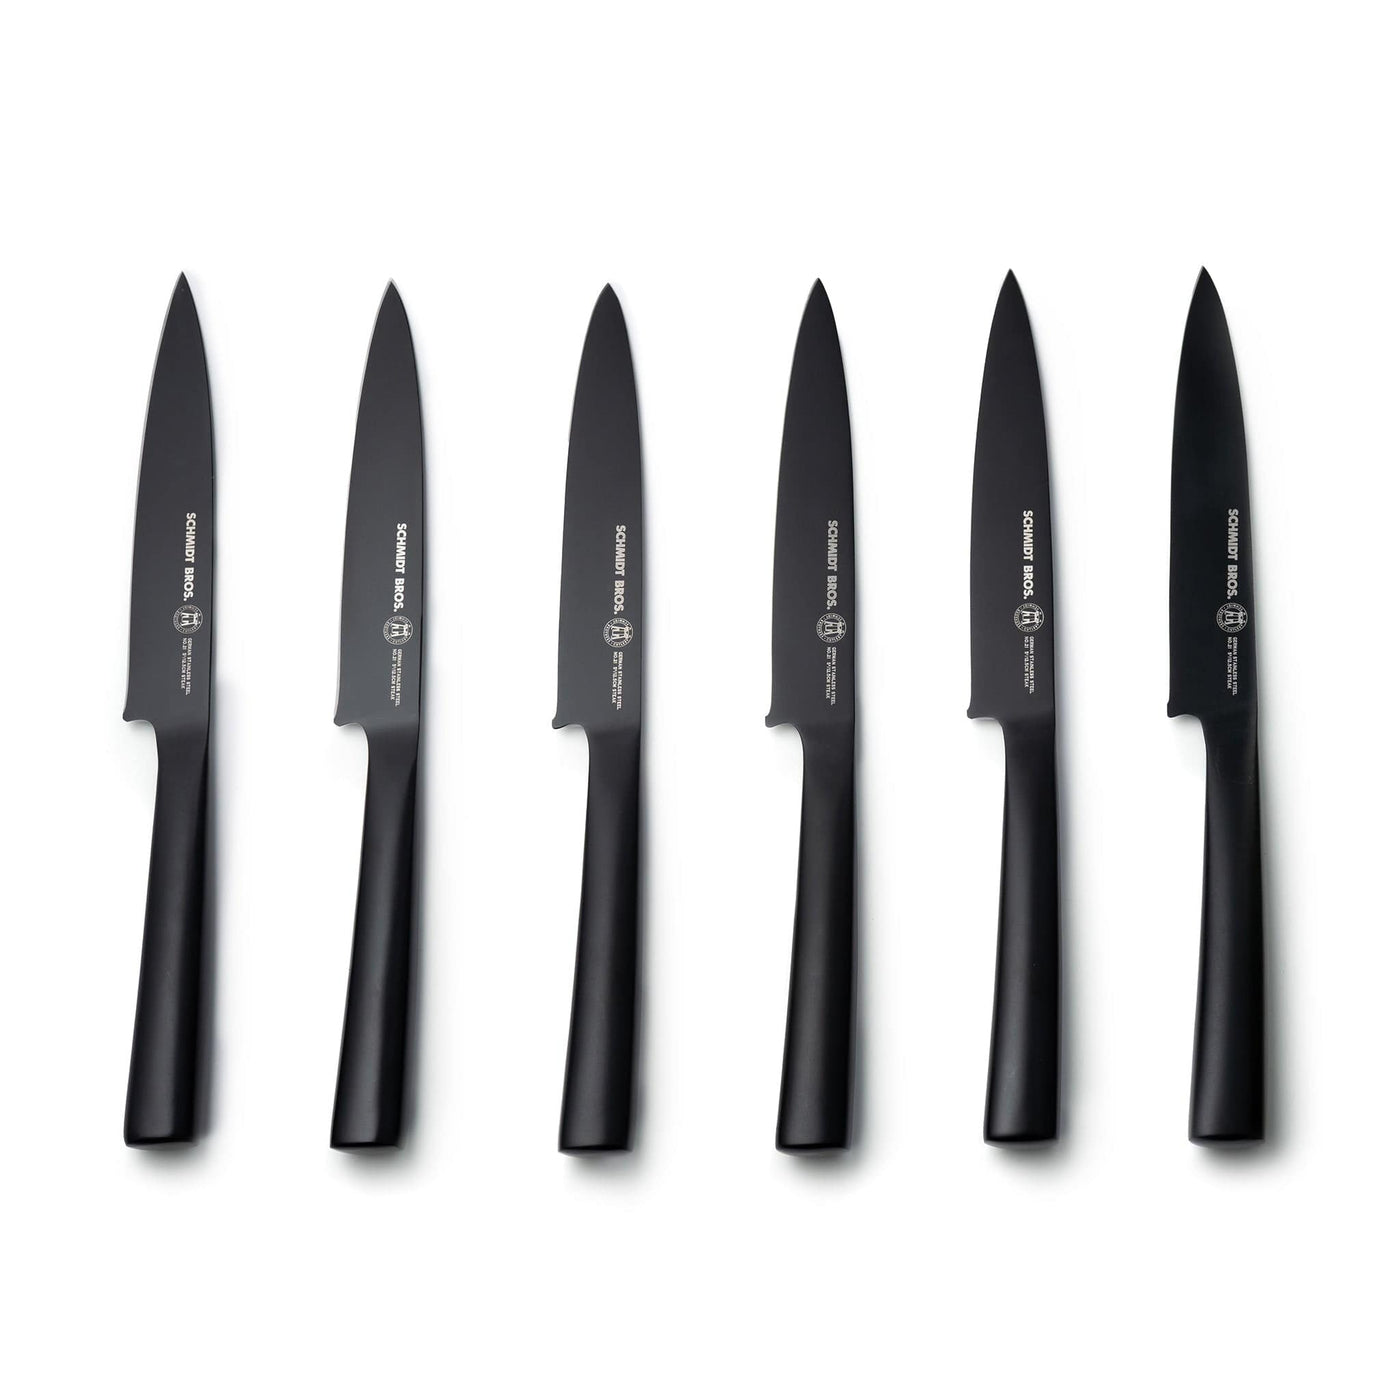 Jet Black, 12-Piece Knife Block Set - Schmidt Brothers Cutlery – Schmidt